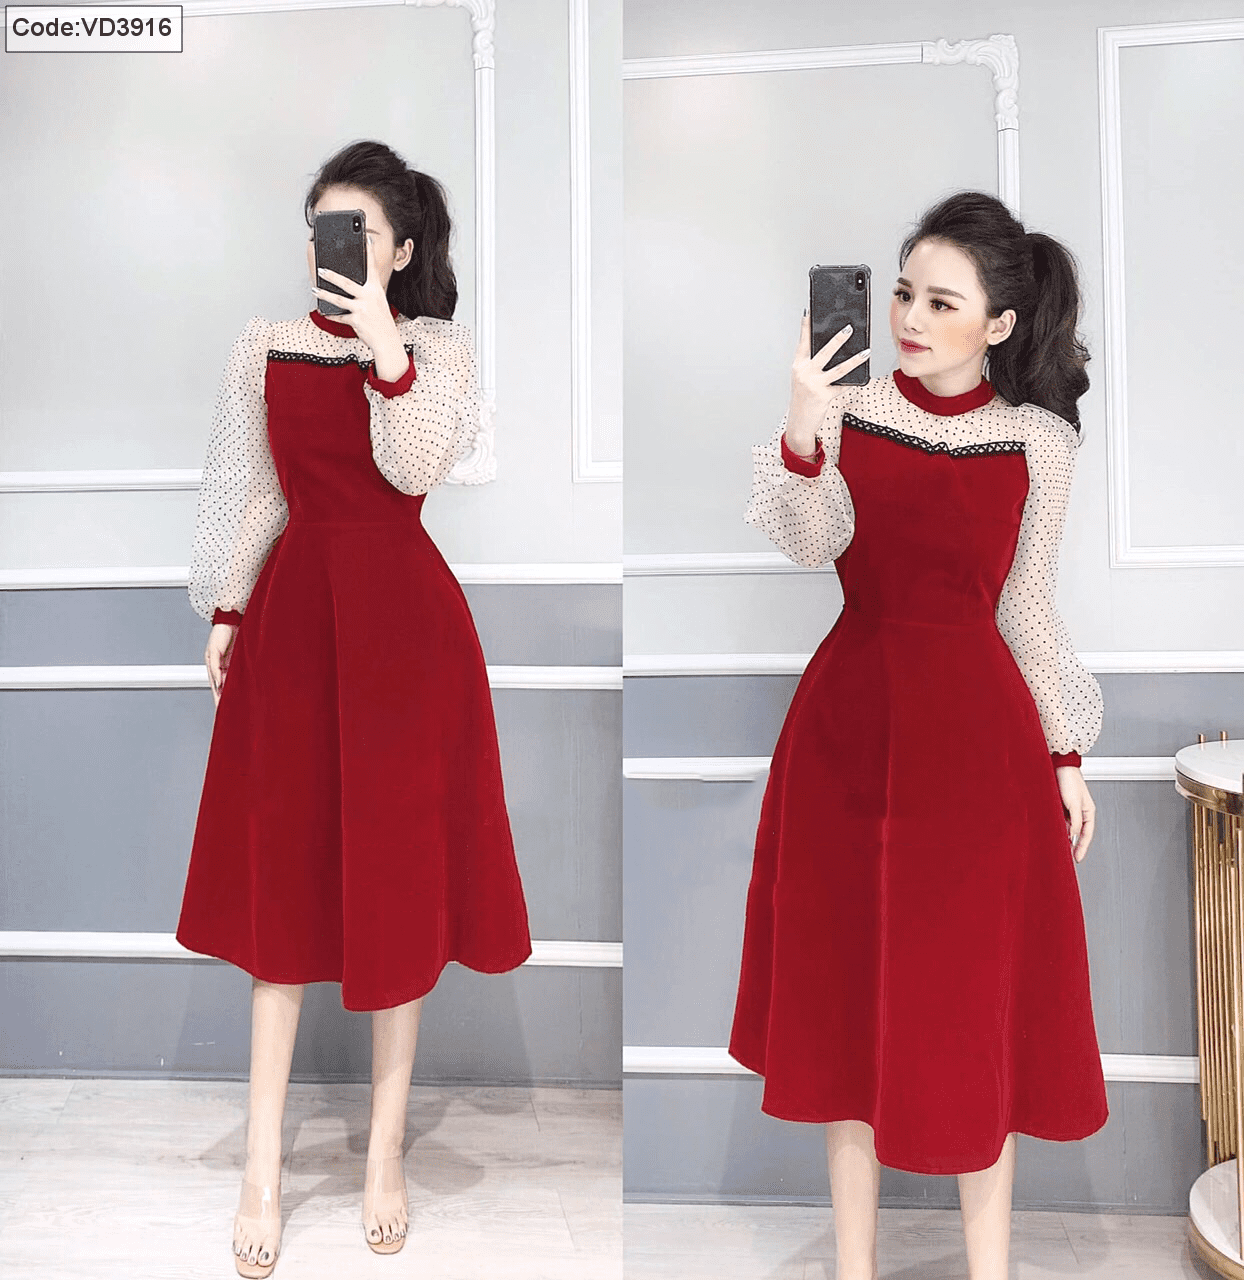 Đầm nhung đỏ xòe tay phối lưới bi giá sỉ - ANN.COM.VN